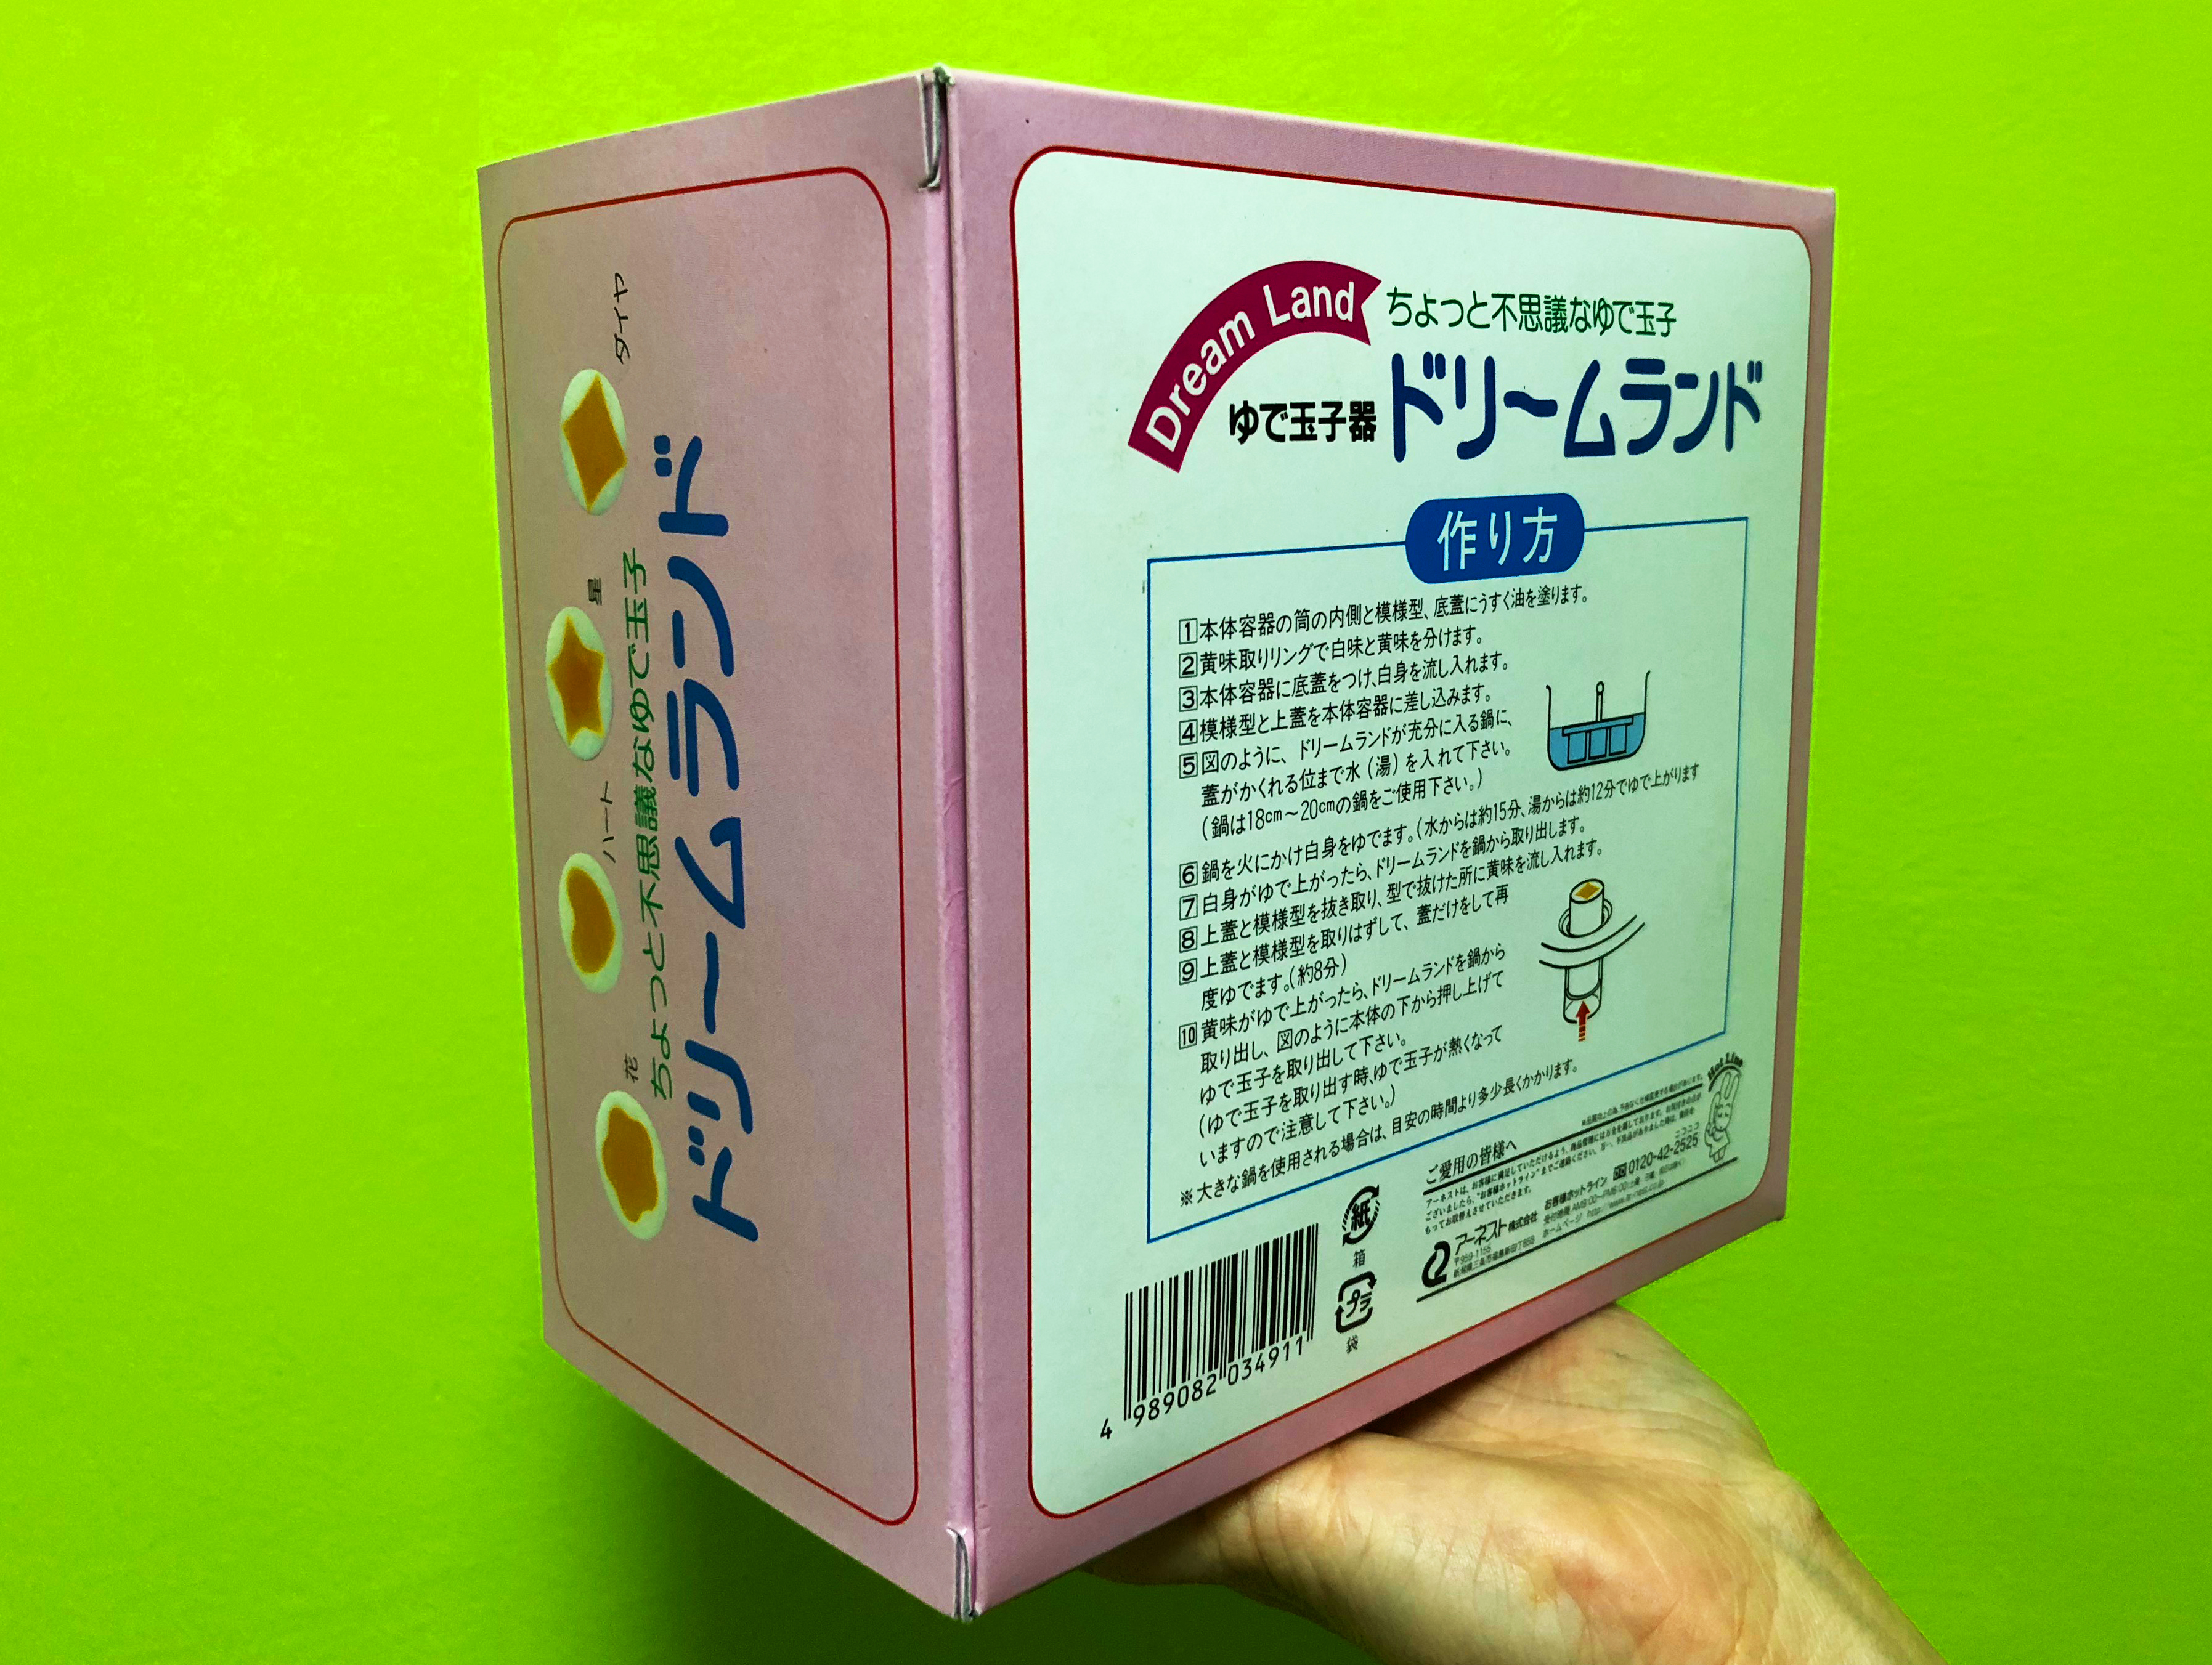 Parte trasera de la caja con instrucciones en japonés